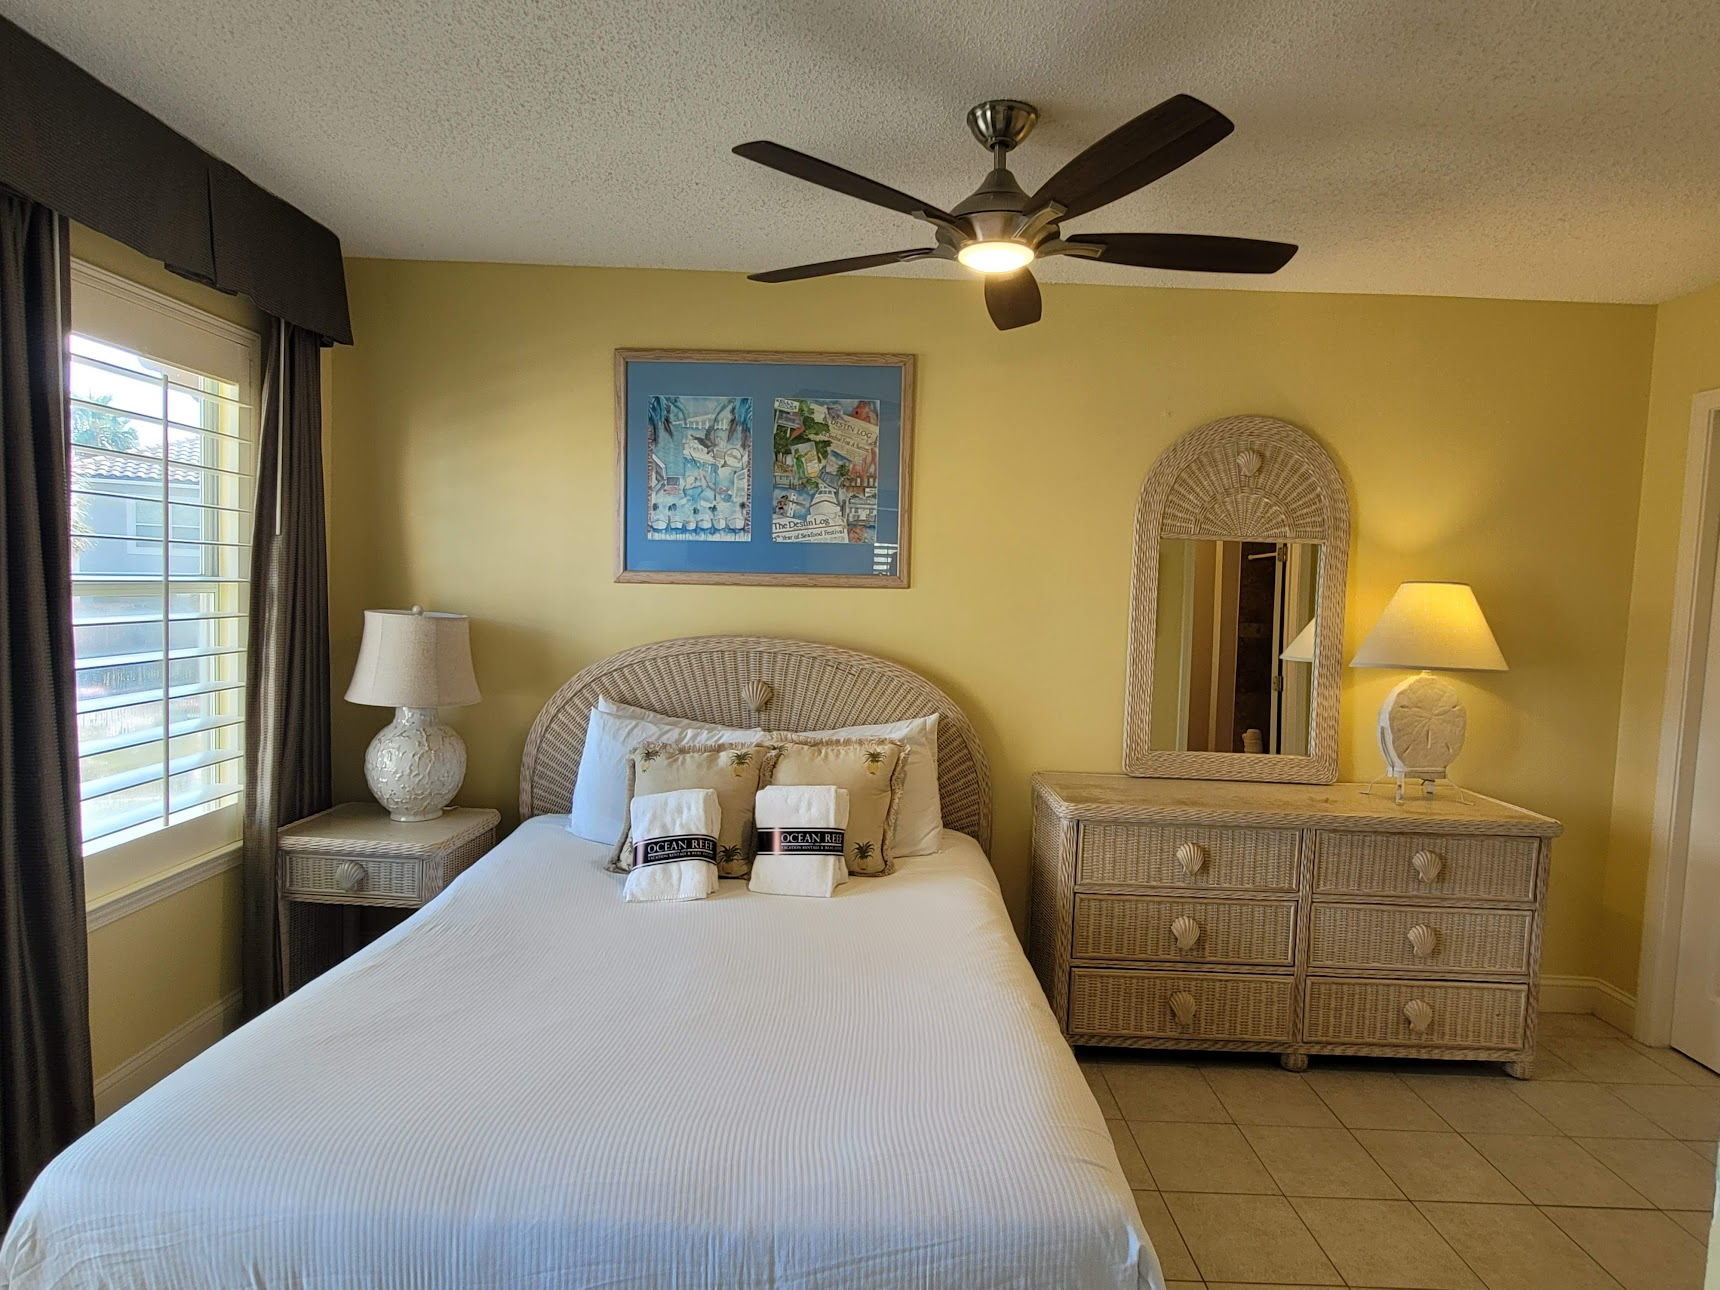 Guest bedroom in Miramar Beach home